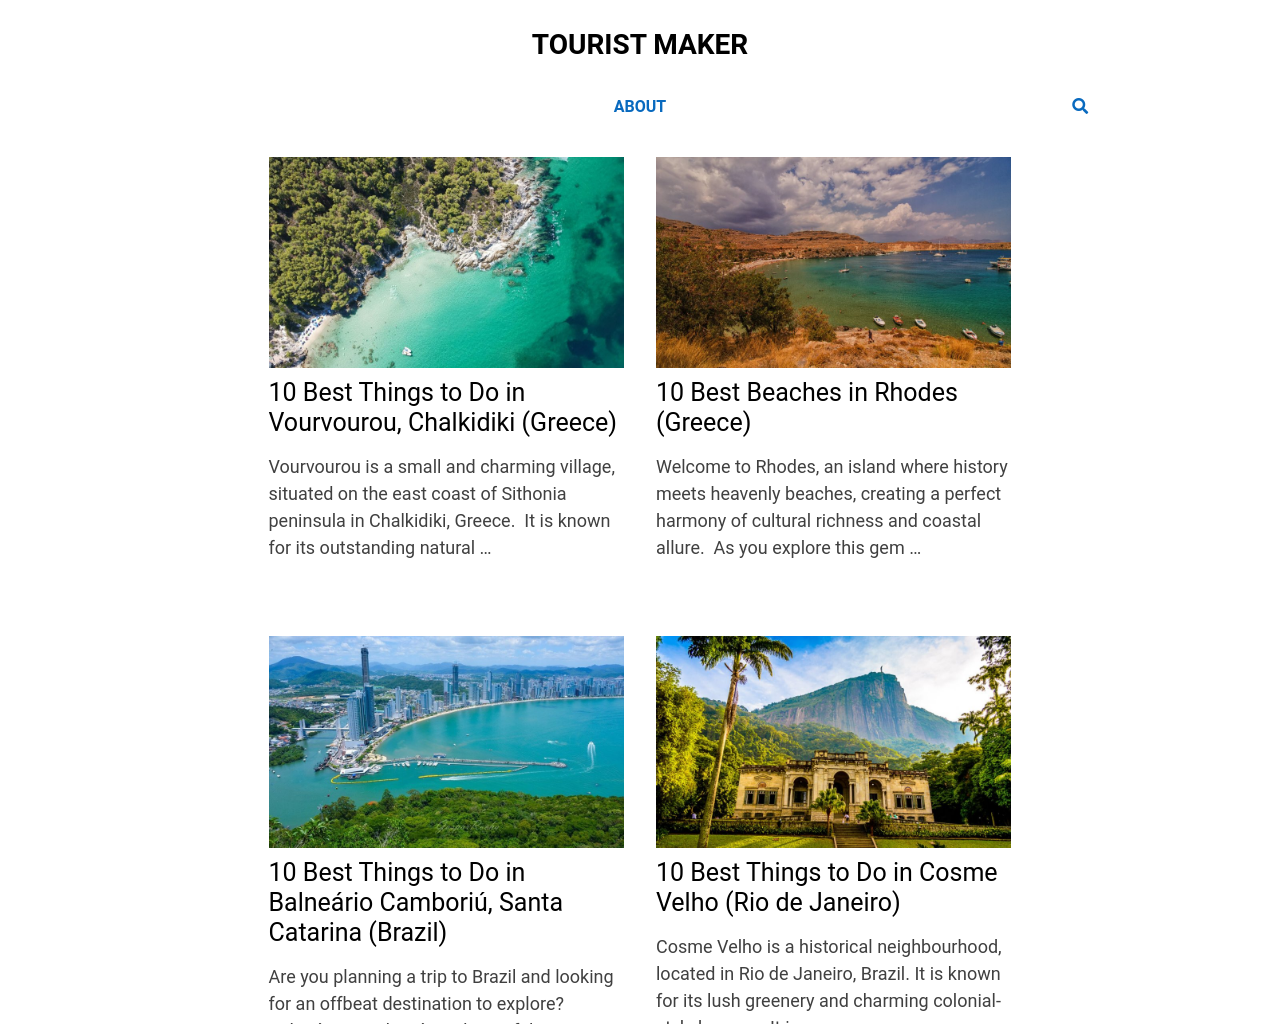 touristmaker.com